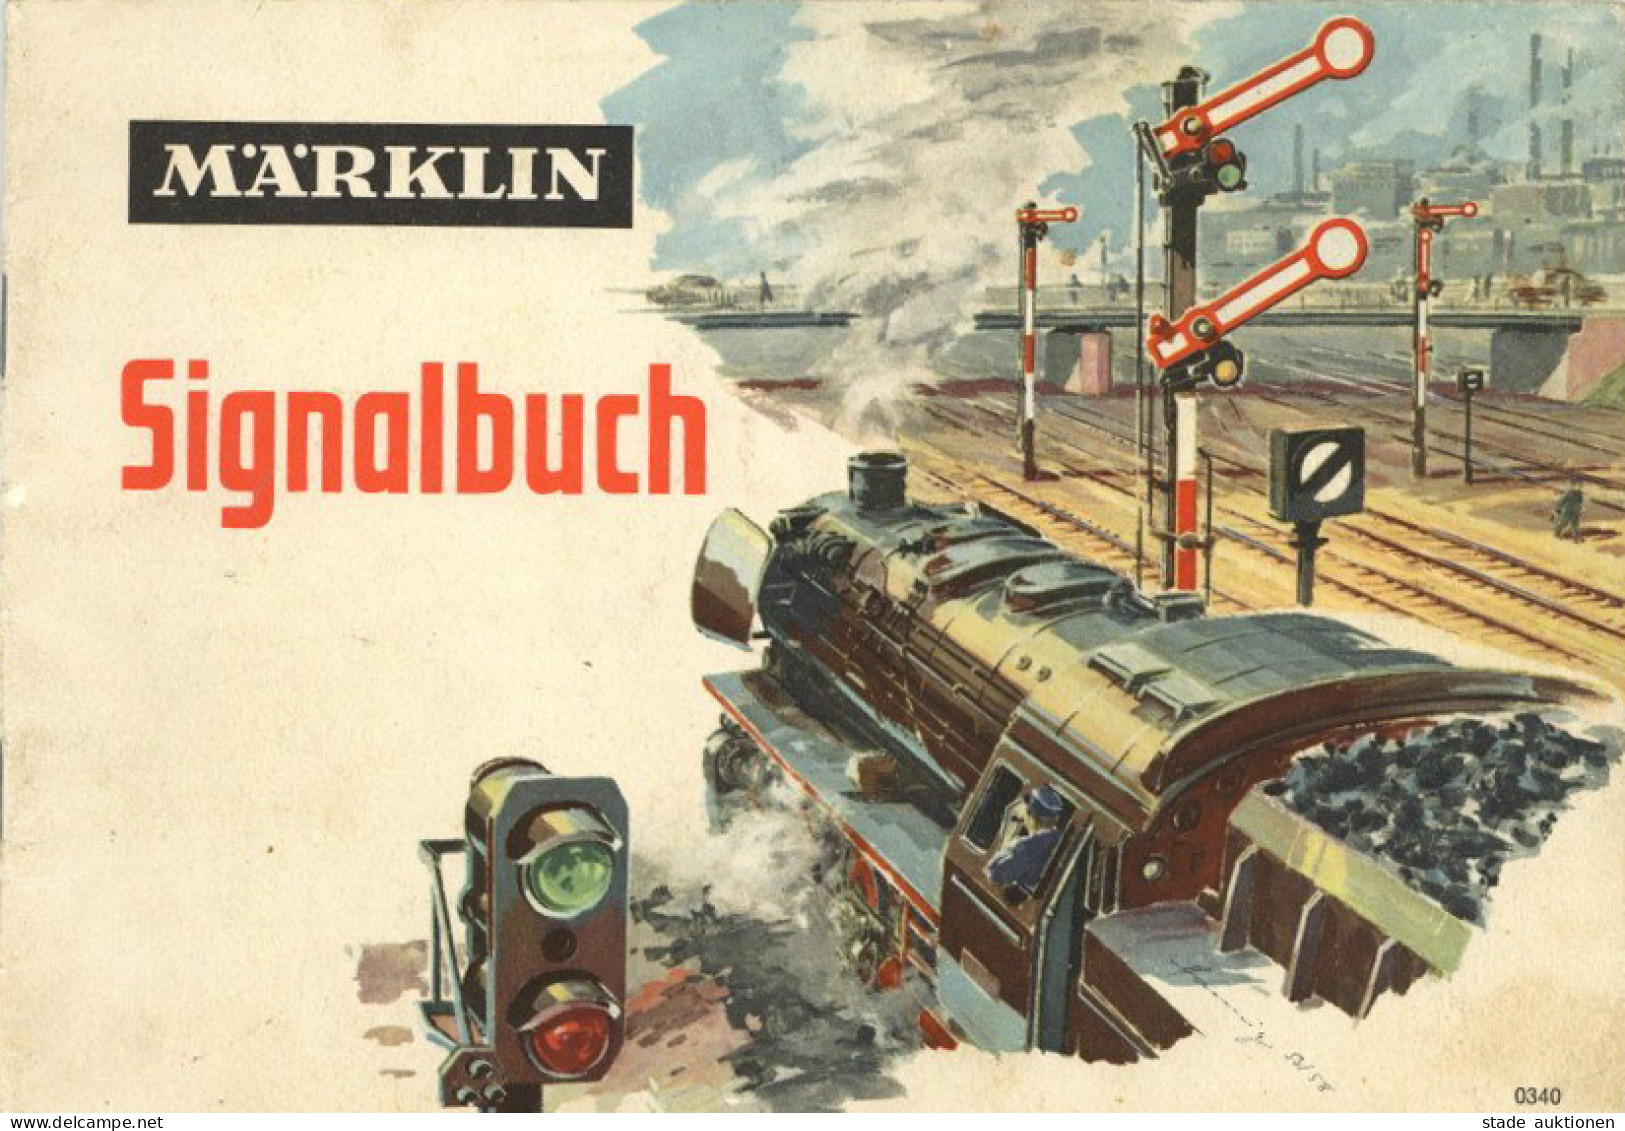 Eisenbahn Märklin Signalbuch 0340, 40 S. I-II Chemin De Fer - Eisenbahnen